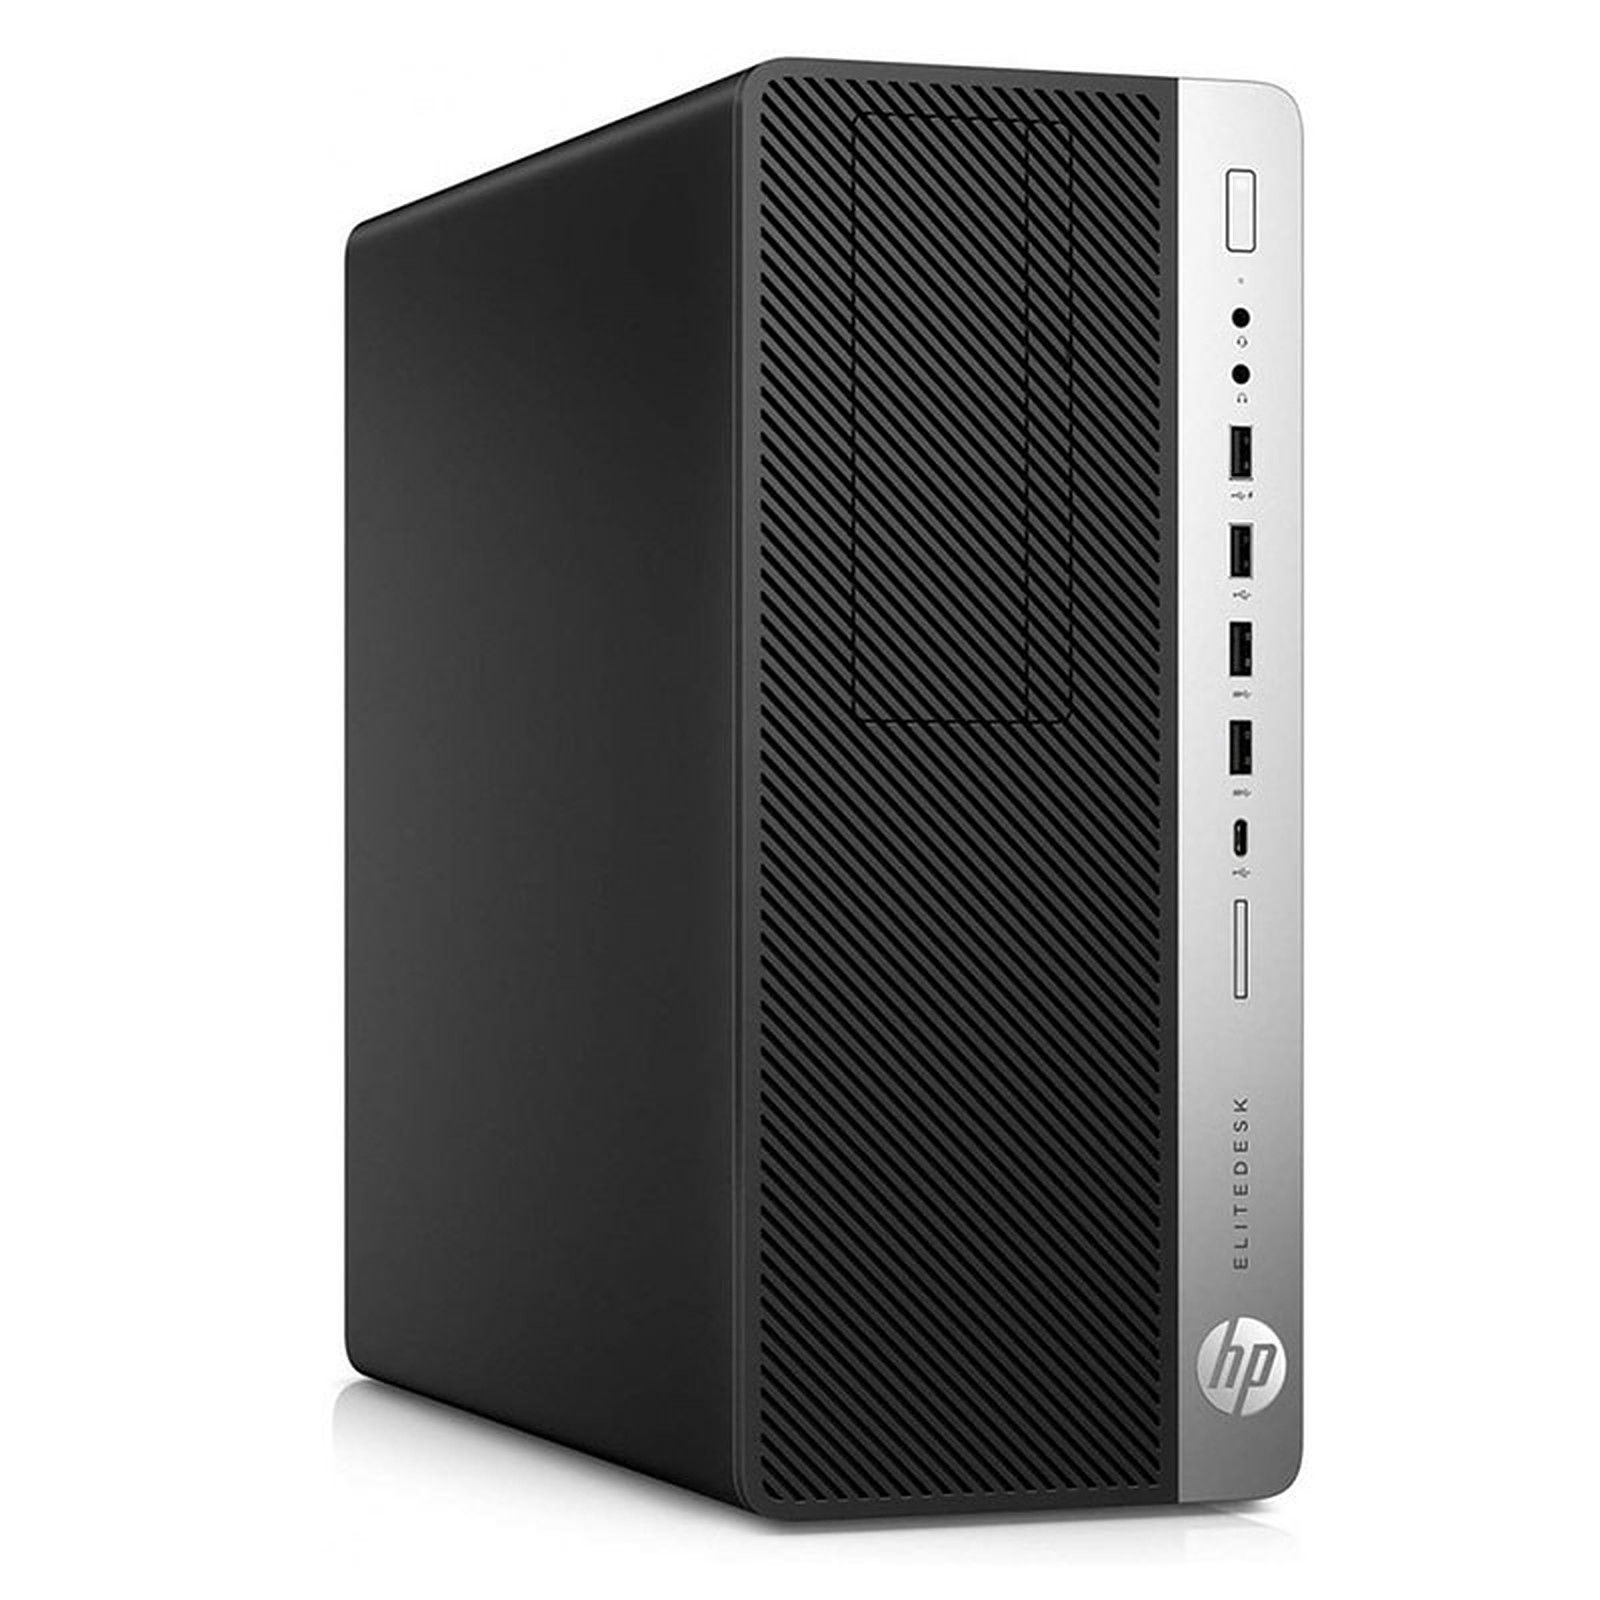 HP LPG-800G3 (I565162S) · Reconditionne - PC de bureau reconditionne HP